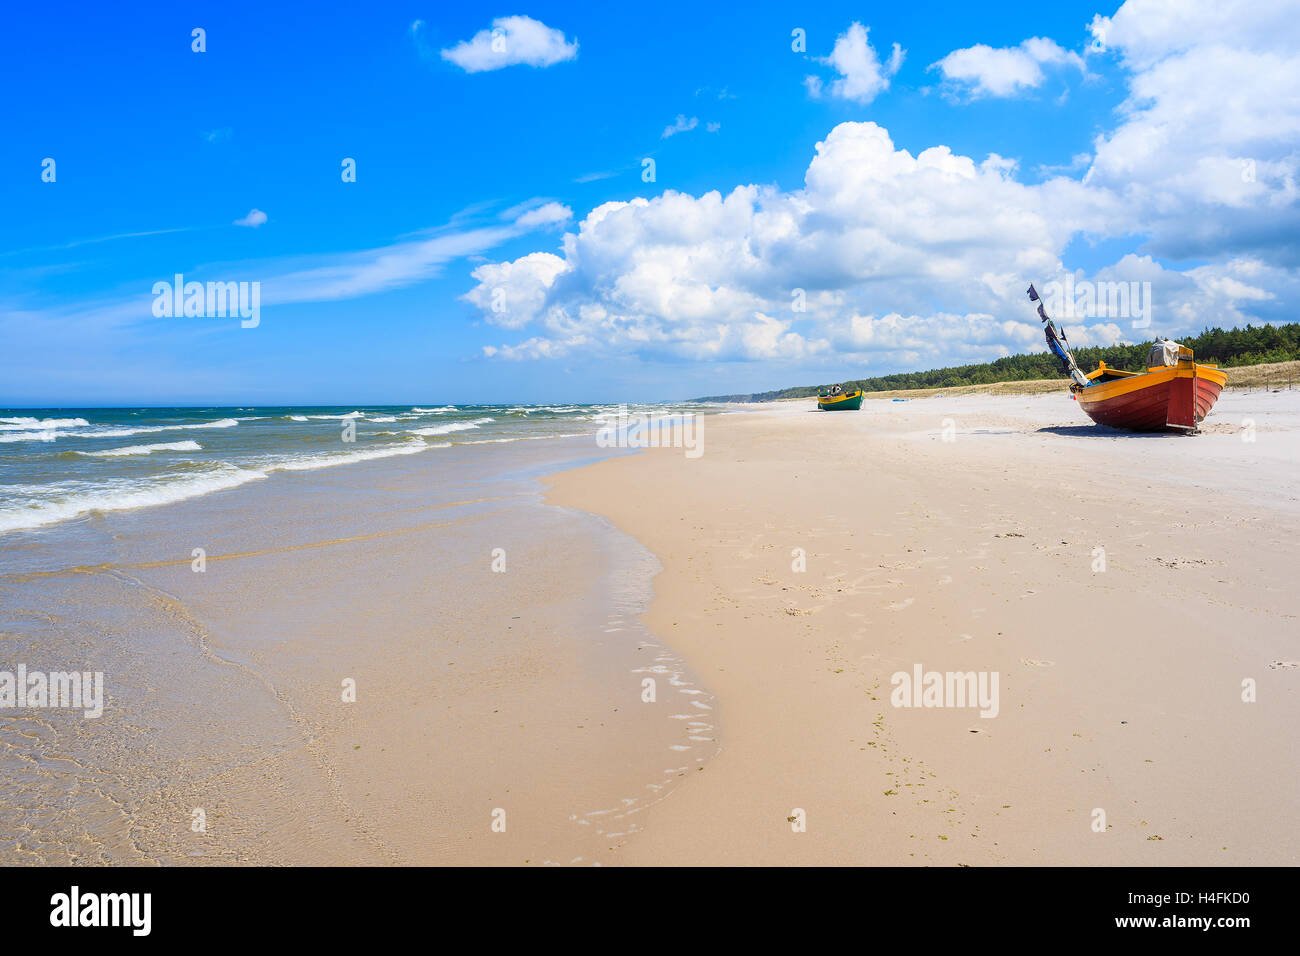 Plage de sable de la mer Baltique et des bateaux de pêche sur la côte en arrière-plan, Pologne Banque D'Images